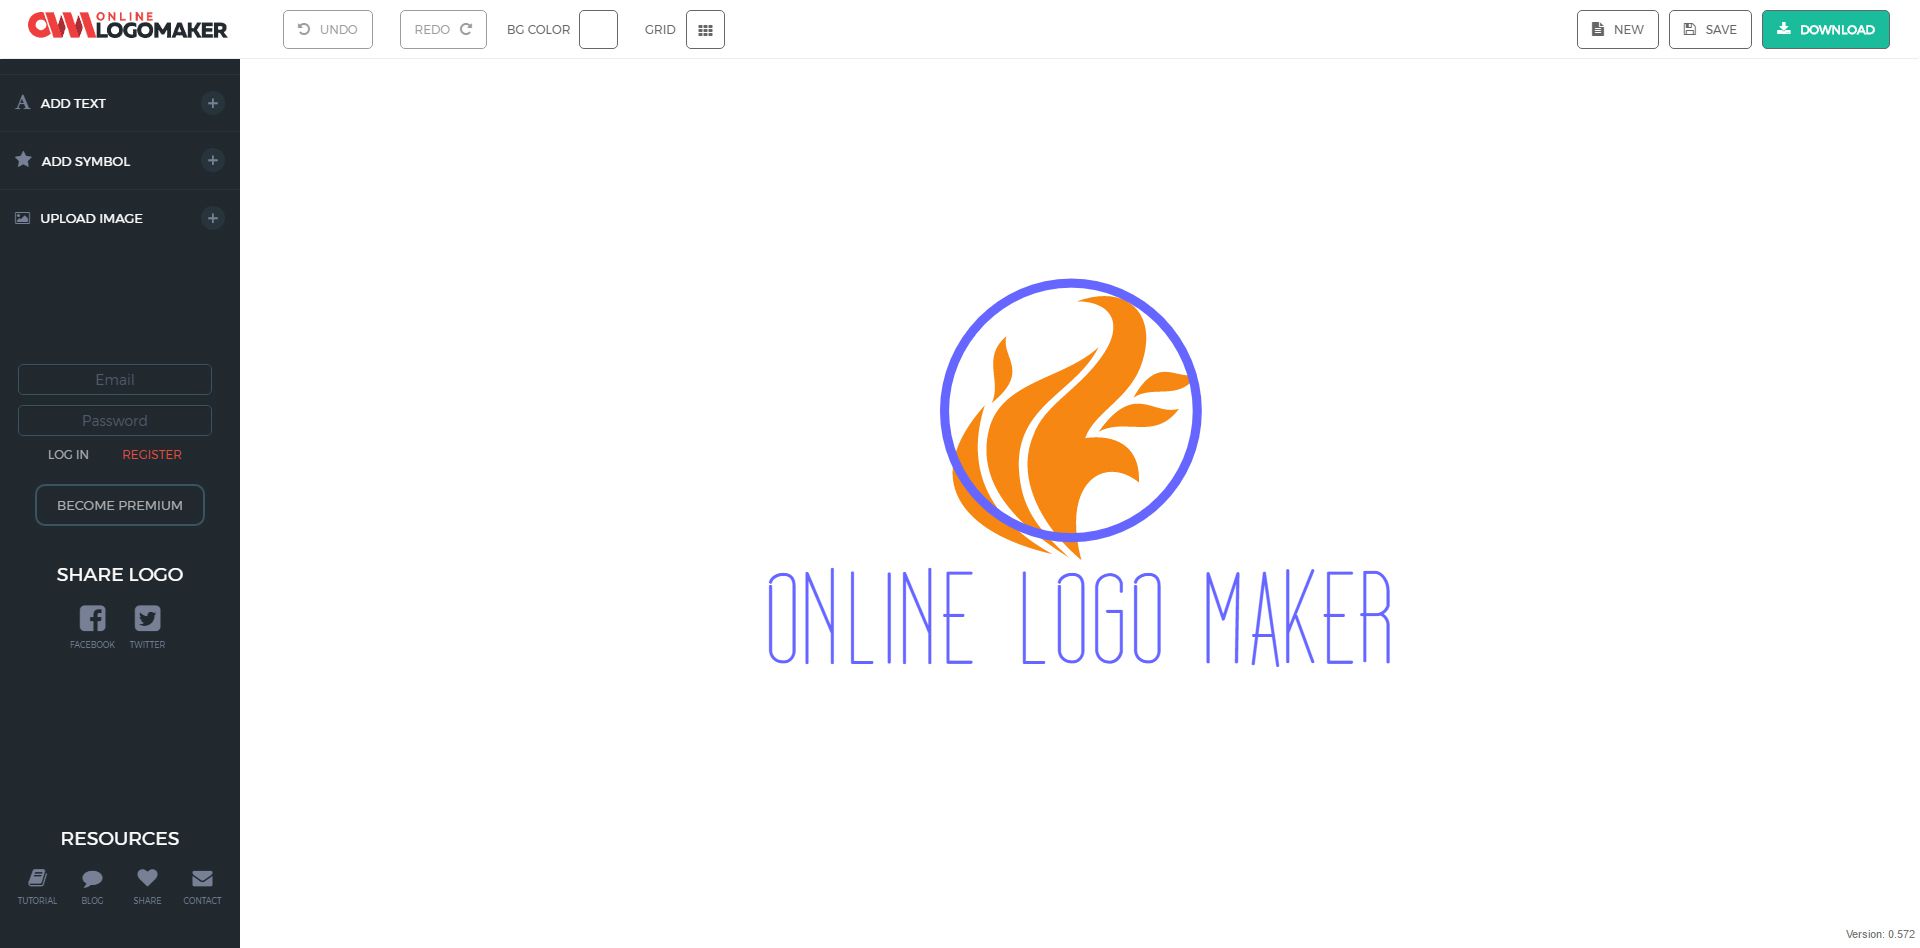 Thiết kế logo yến sào